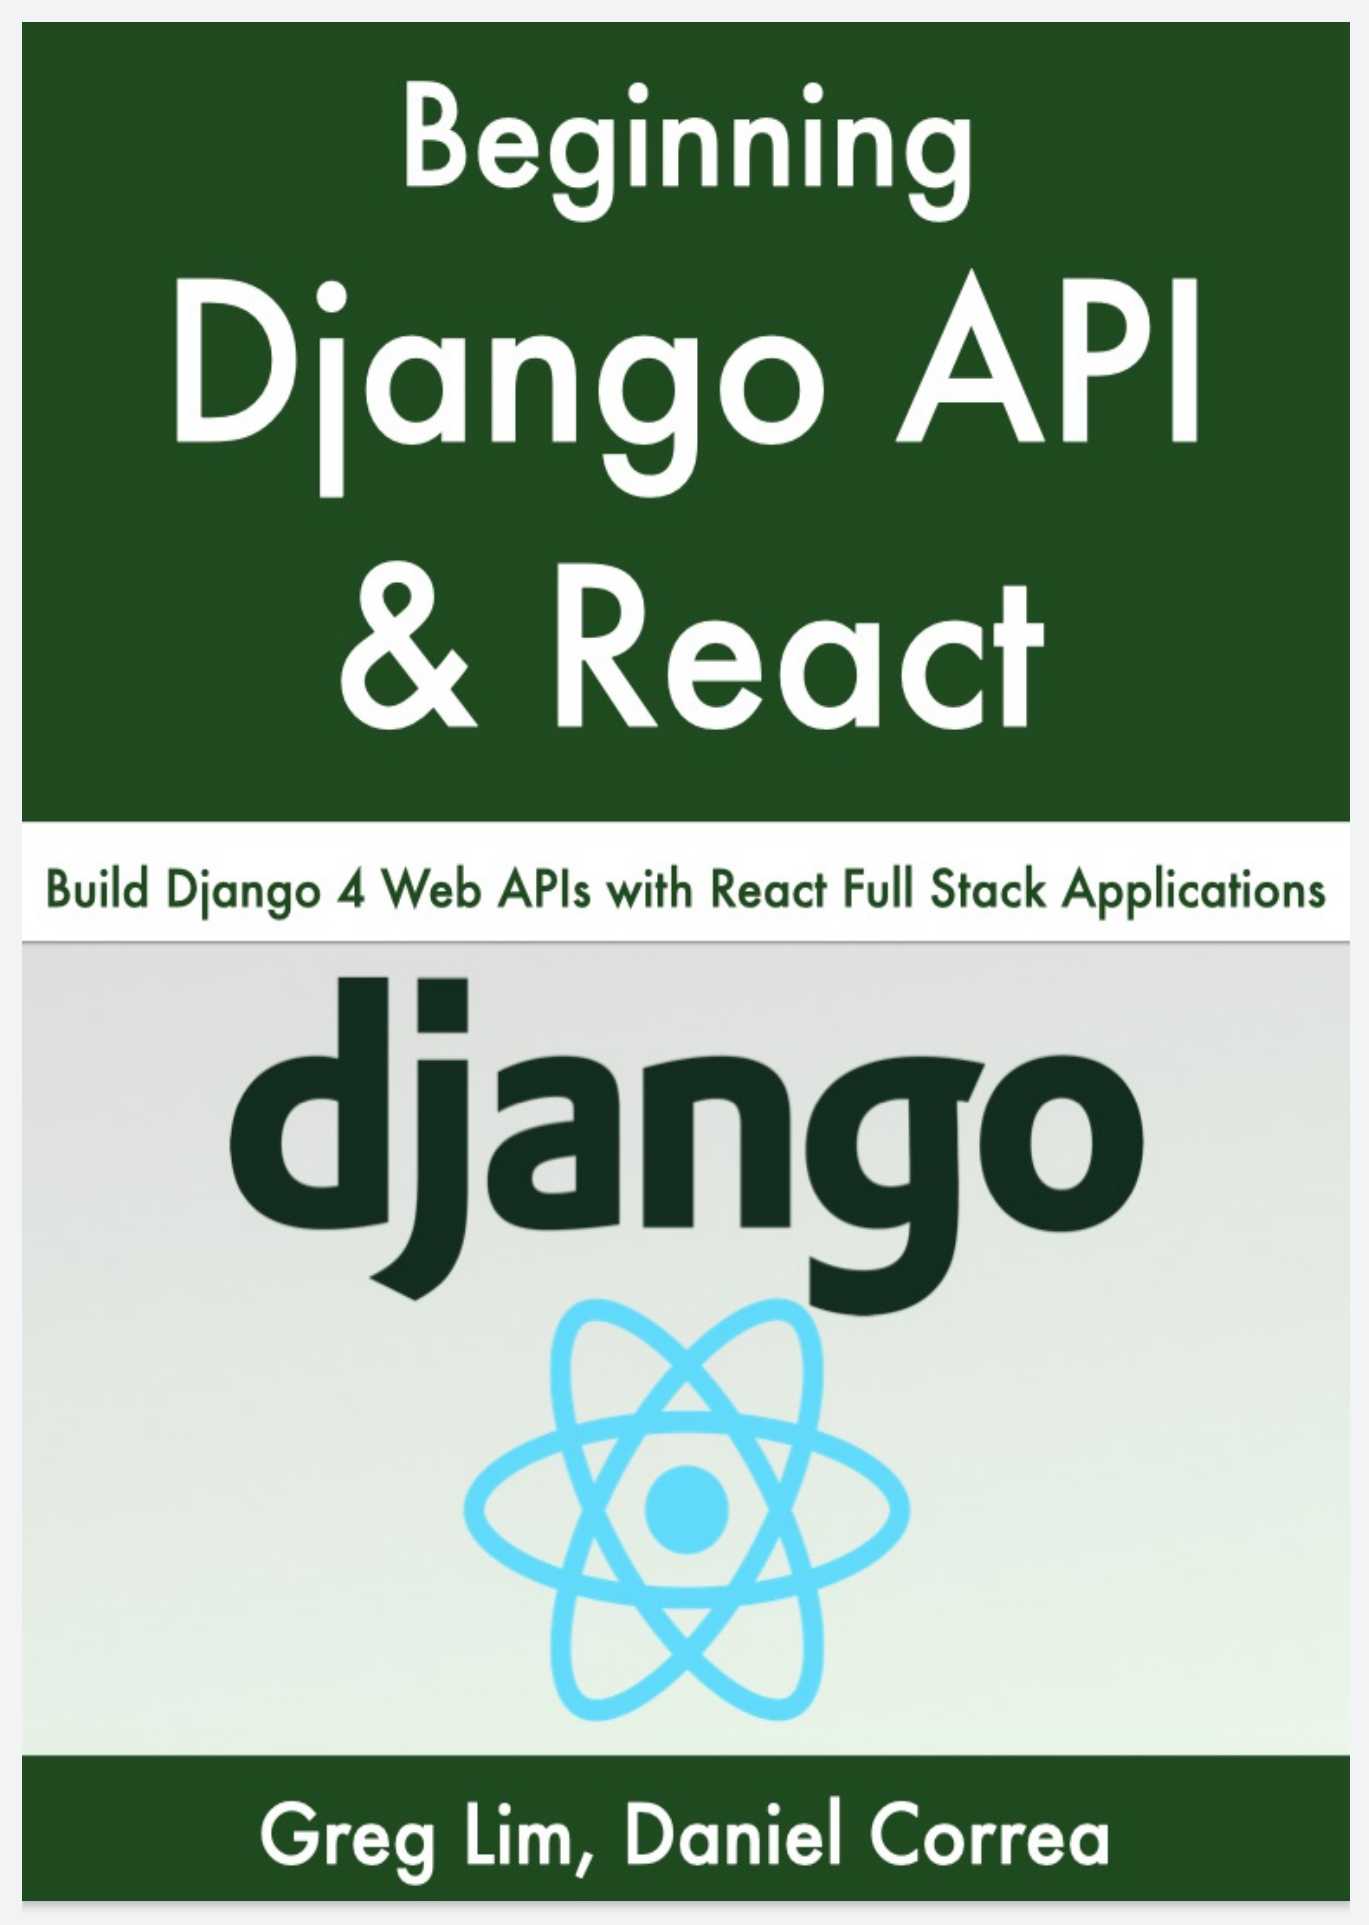 Beginning Django API with React: Build Django 4 Web APIs with React Full Stack Applications